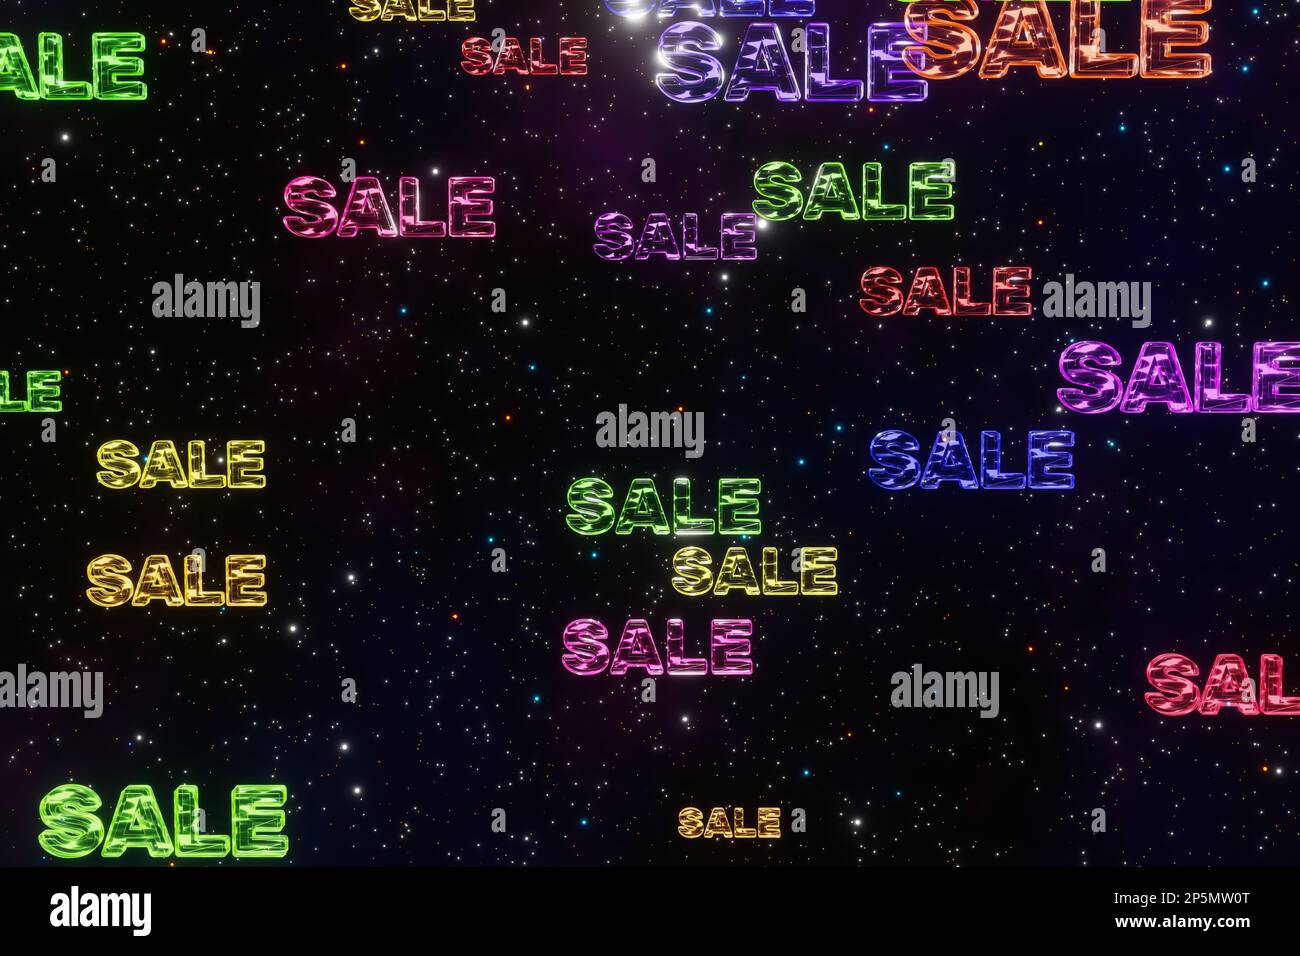 Farbenfrohe Wörter im 3D-Rendering von Space Cyberpunk im Hintergrund. Rabatt fällt zufriedenstellend. Großer Sale, Rabatt, Black friday, Einkaufszentrum oder kommen Stockfoto